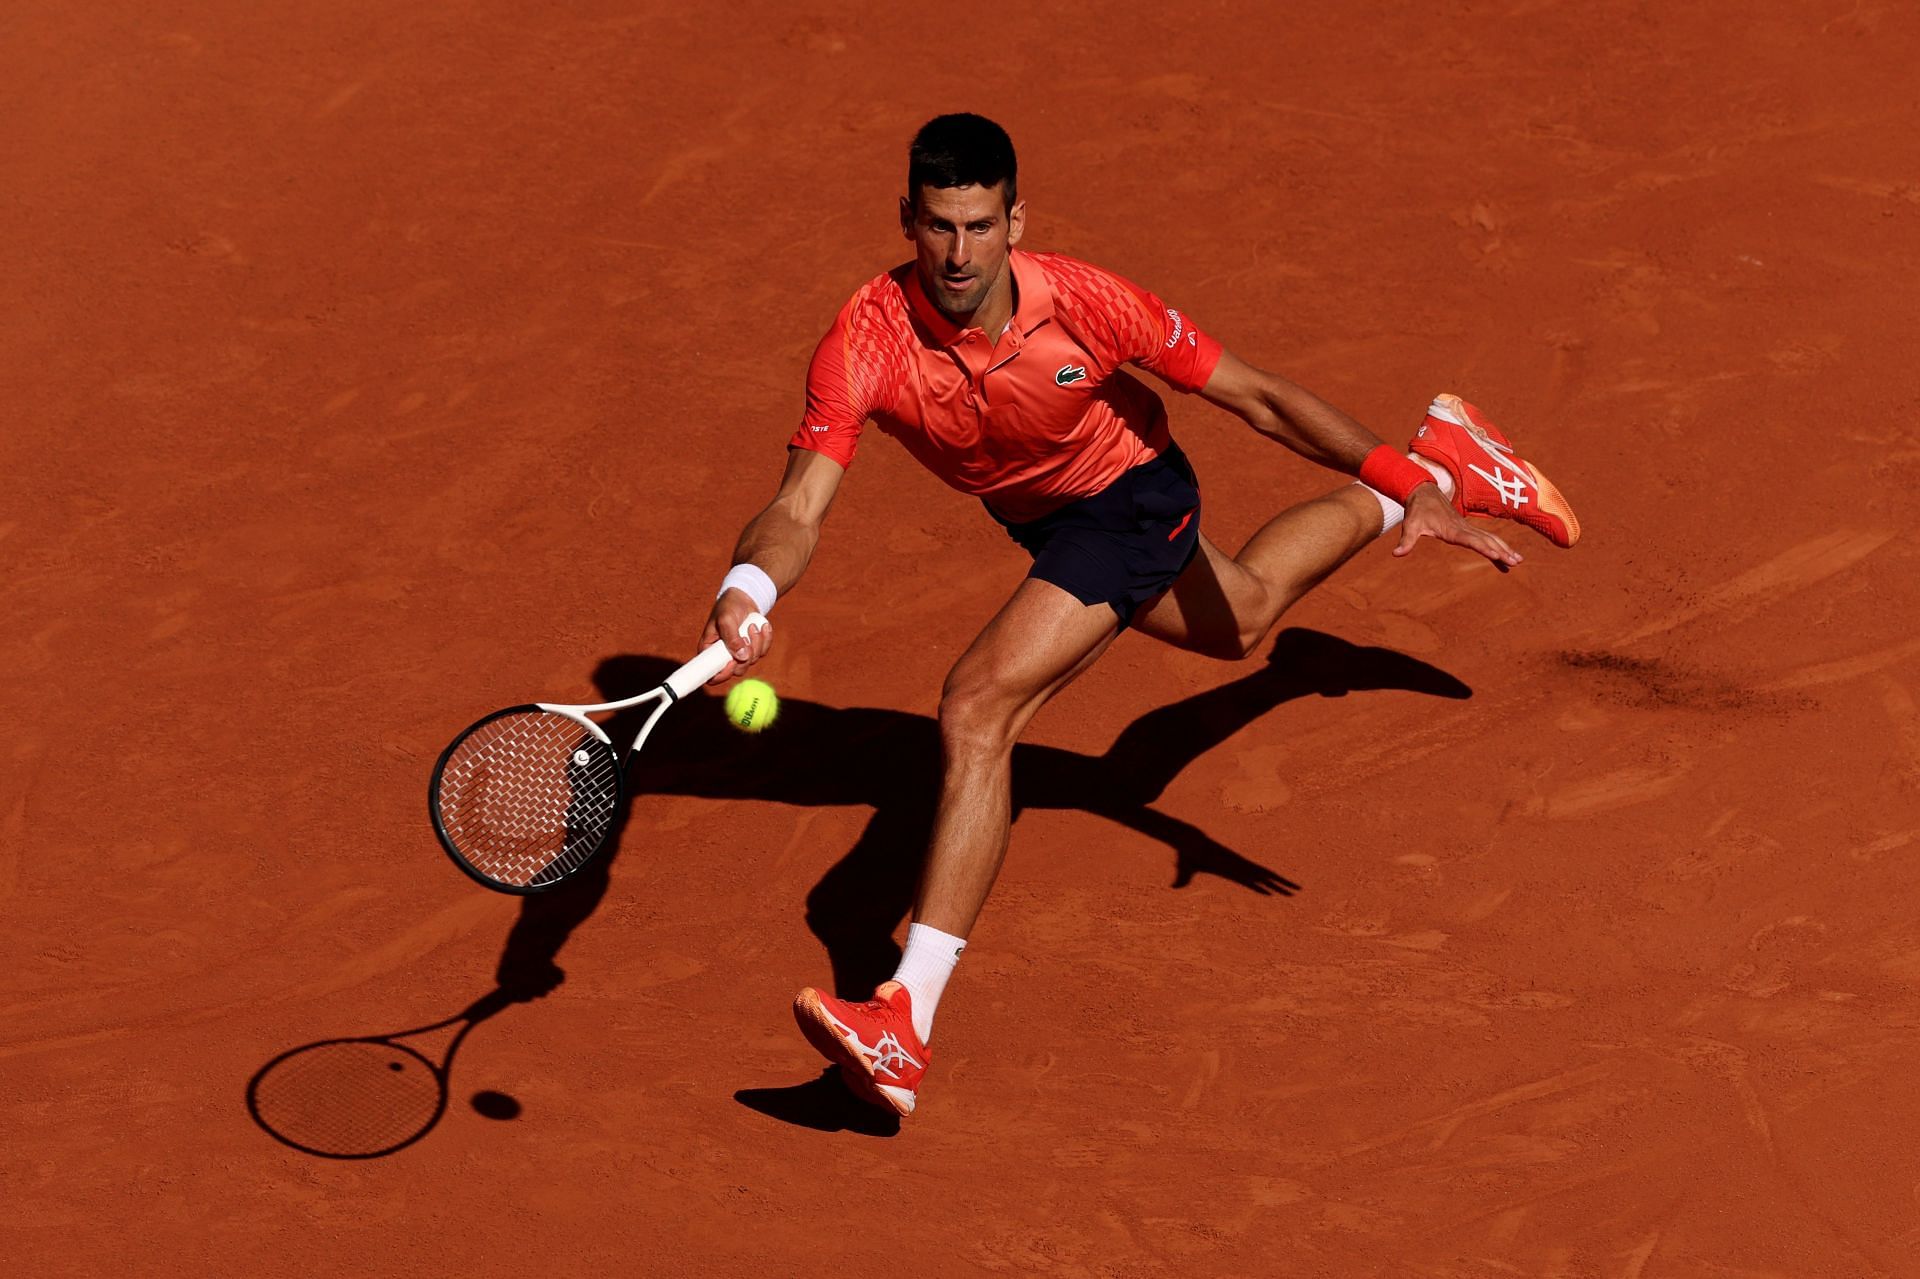 Novak Djokovic advances to the quarter-finals